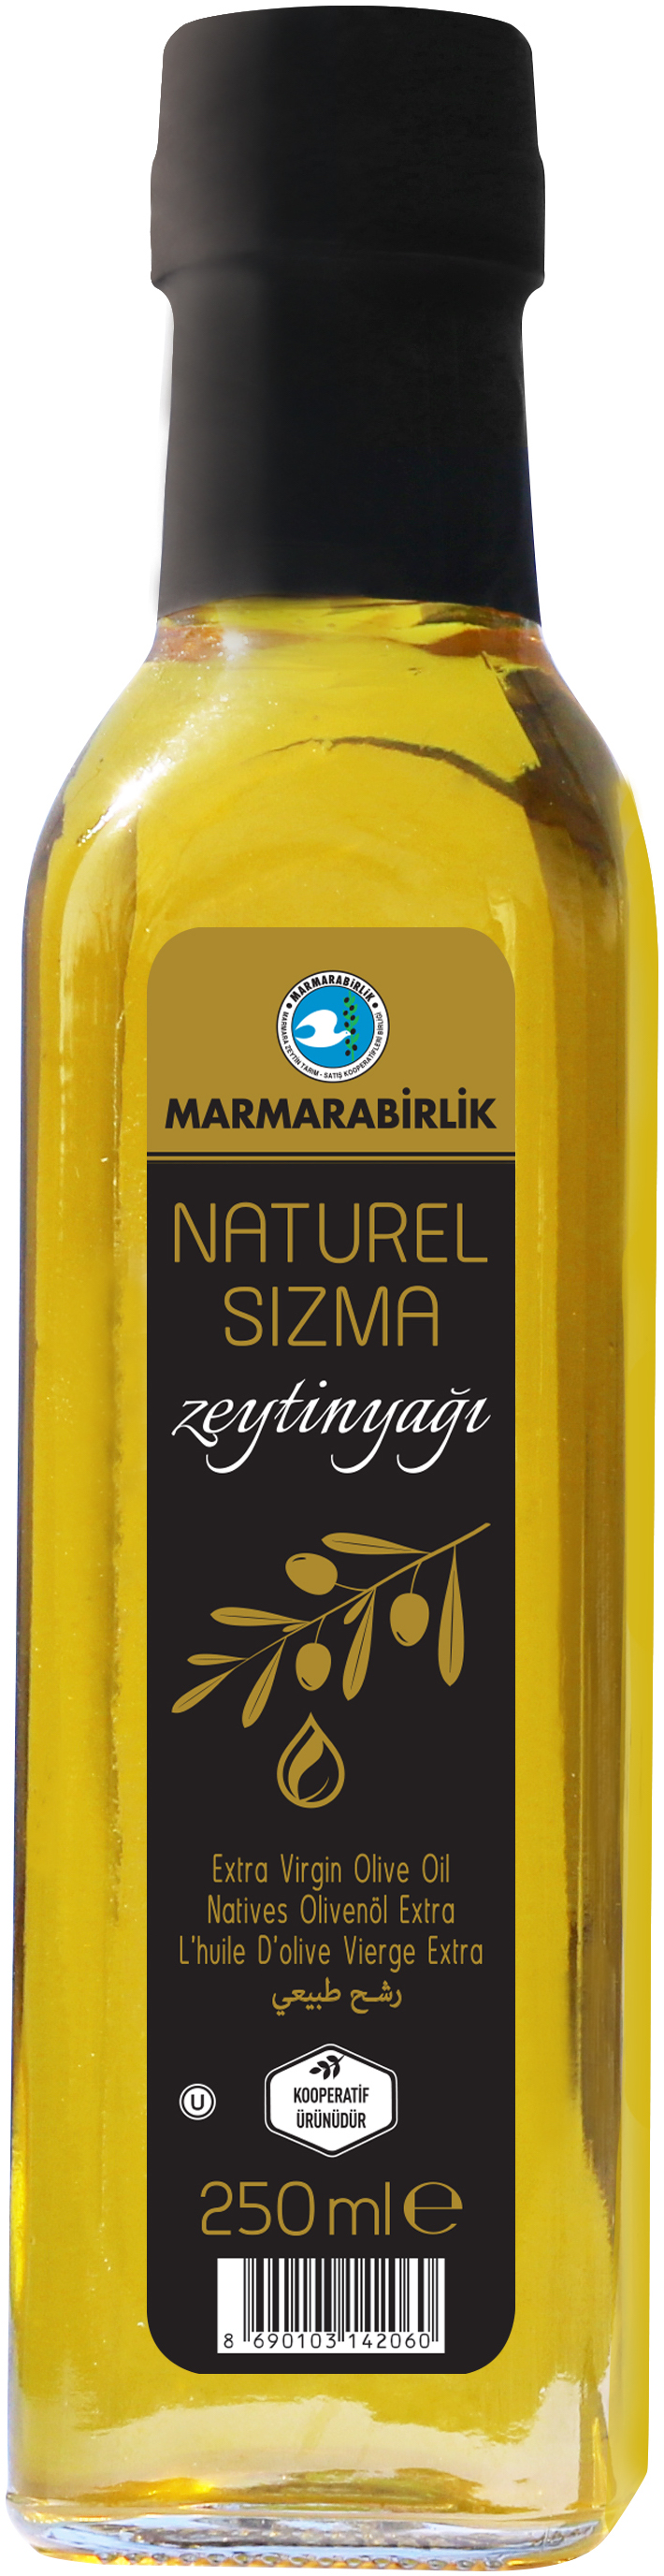 Масло оливковое Marmarabirlik Naturel sizma Extra Virgin, 250 мл